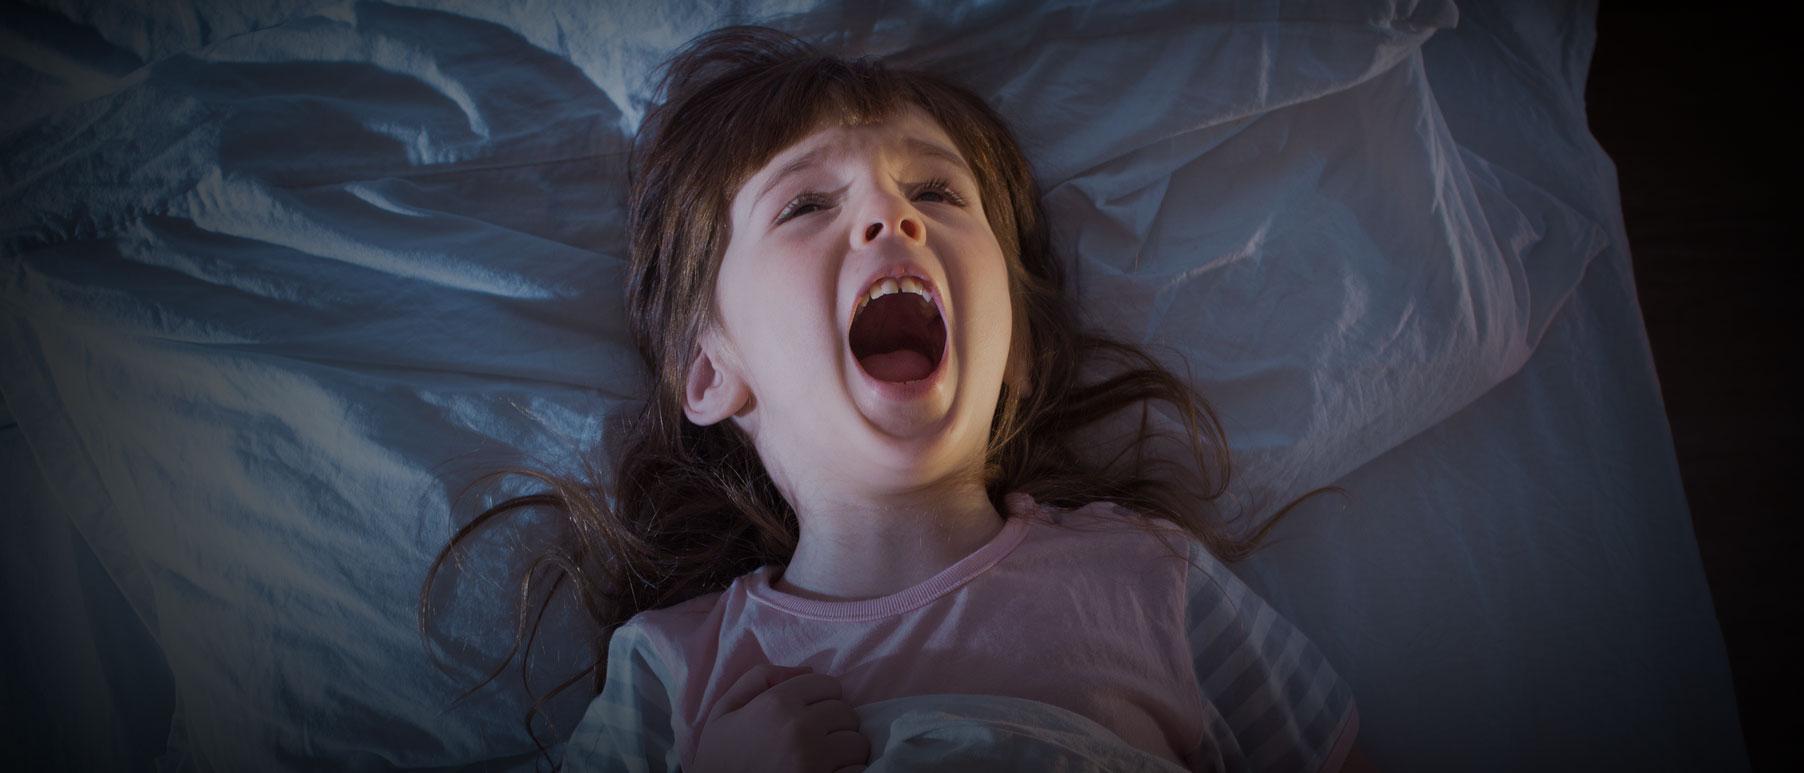 Nattskräck kännetecknas av skrik och intensiv rädsla. Men barnet kommer oftast inte ihåg det nästa morgon.